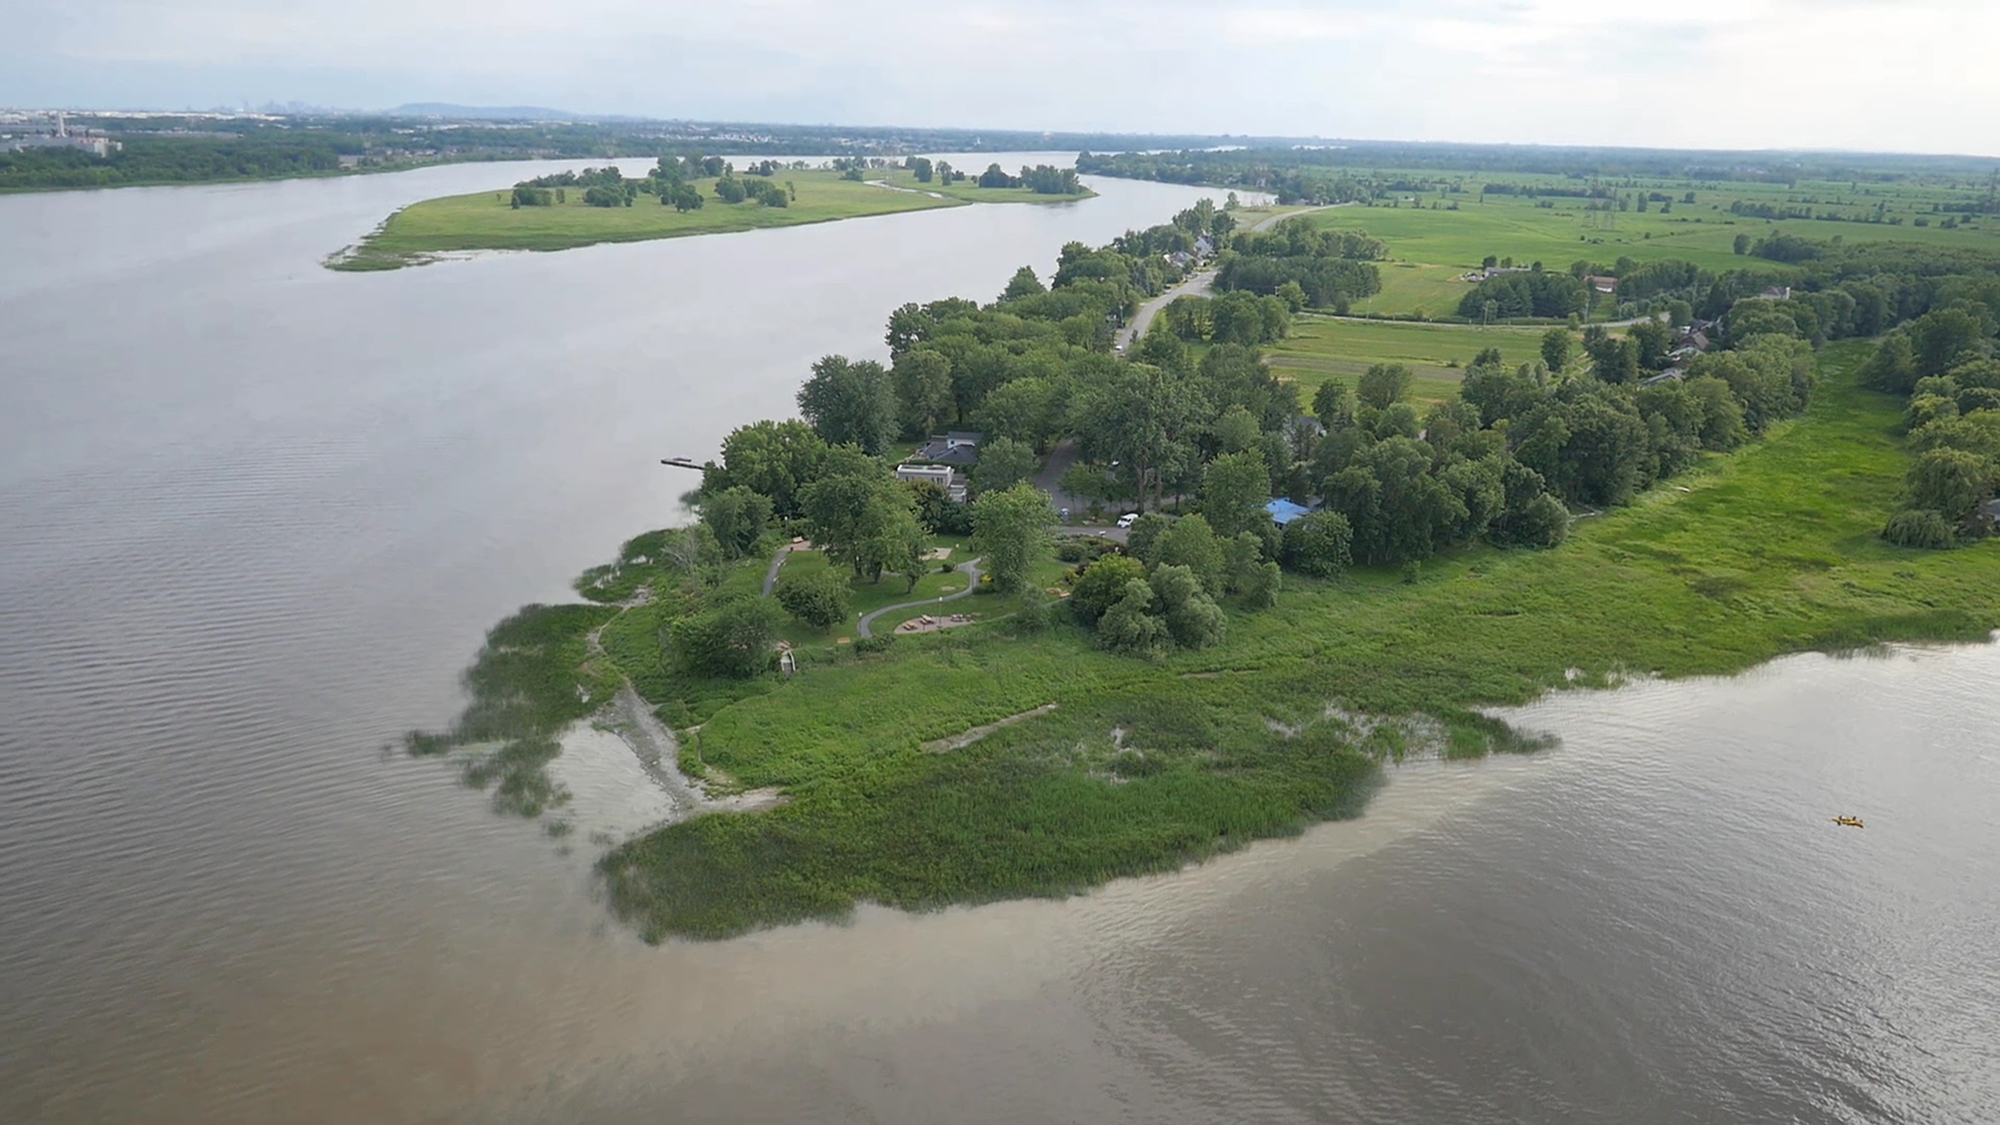 Image en couleur d’une vue aérienne de la pointe est de l’île en été. On voit la rivière des Prairies à gauche et la rivière des Mille-Îles à droite. Elles se rejoignent au bas de l’image. 